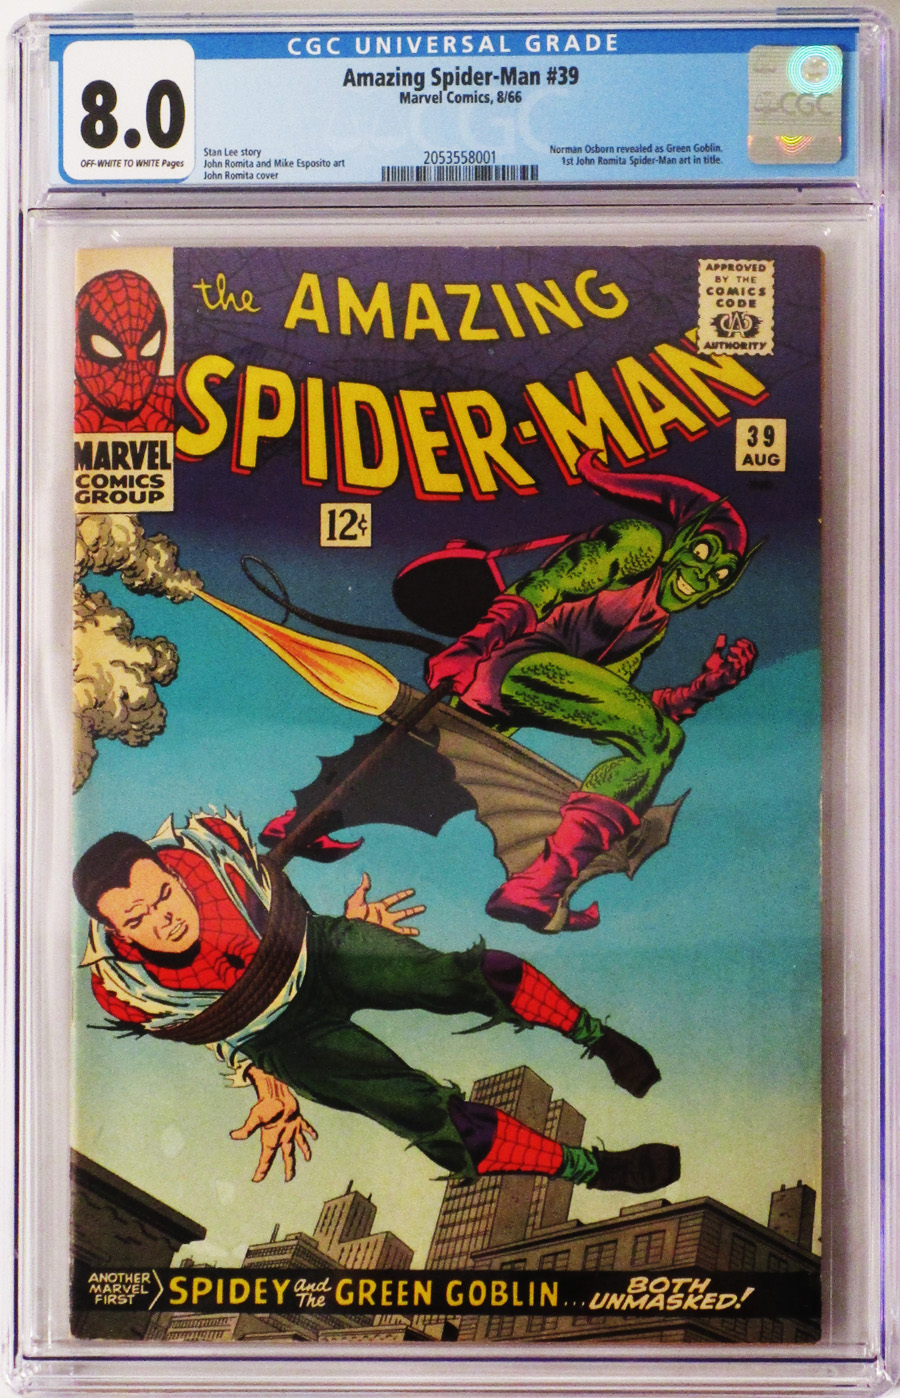 Amazing Spider-Man #39 Cover C CGC 8.0